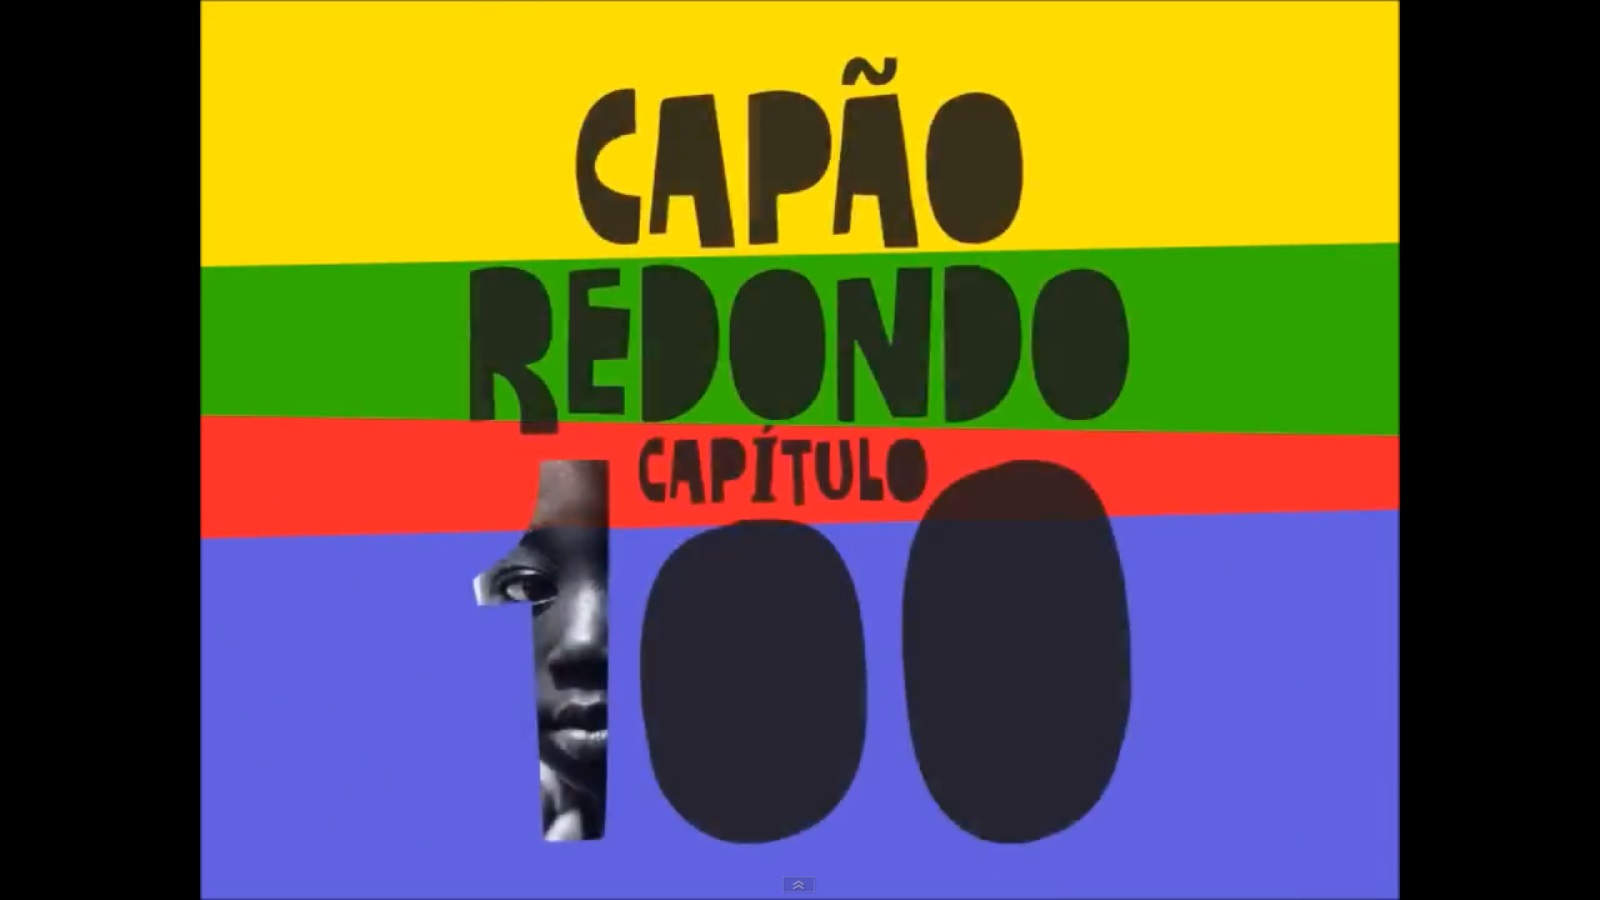 Capão Redondo 100 anos